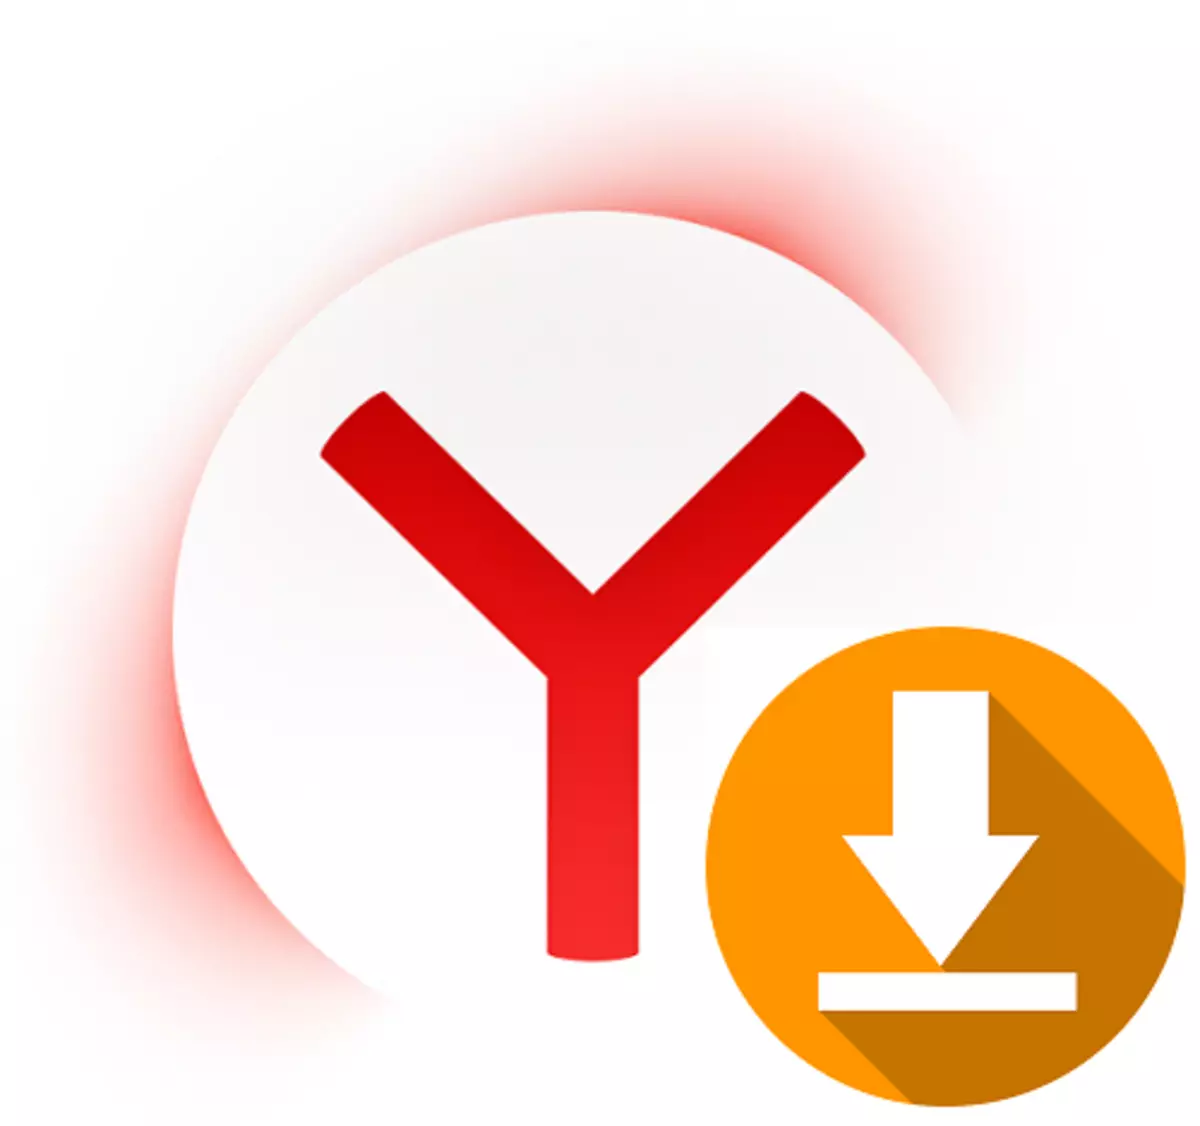 DownloadHelper untuk Yandex.Bauser